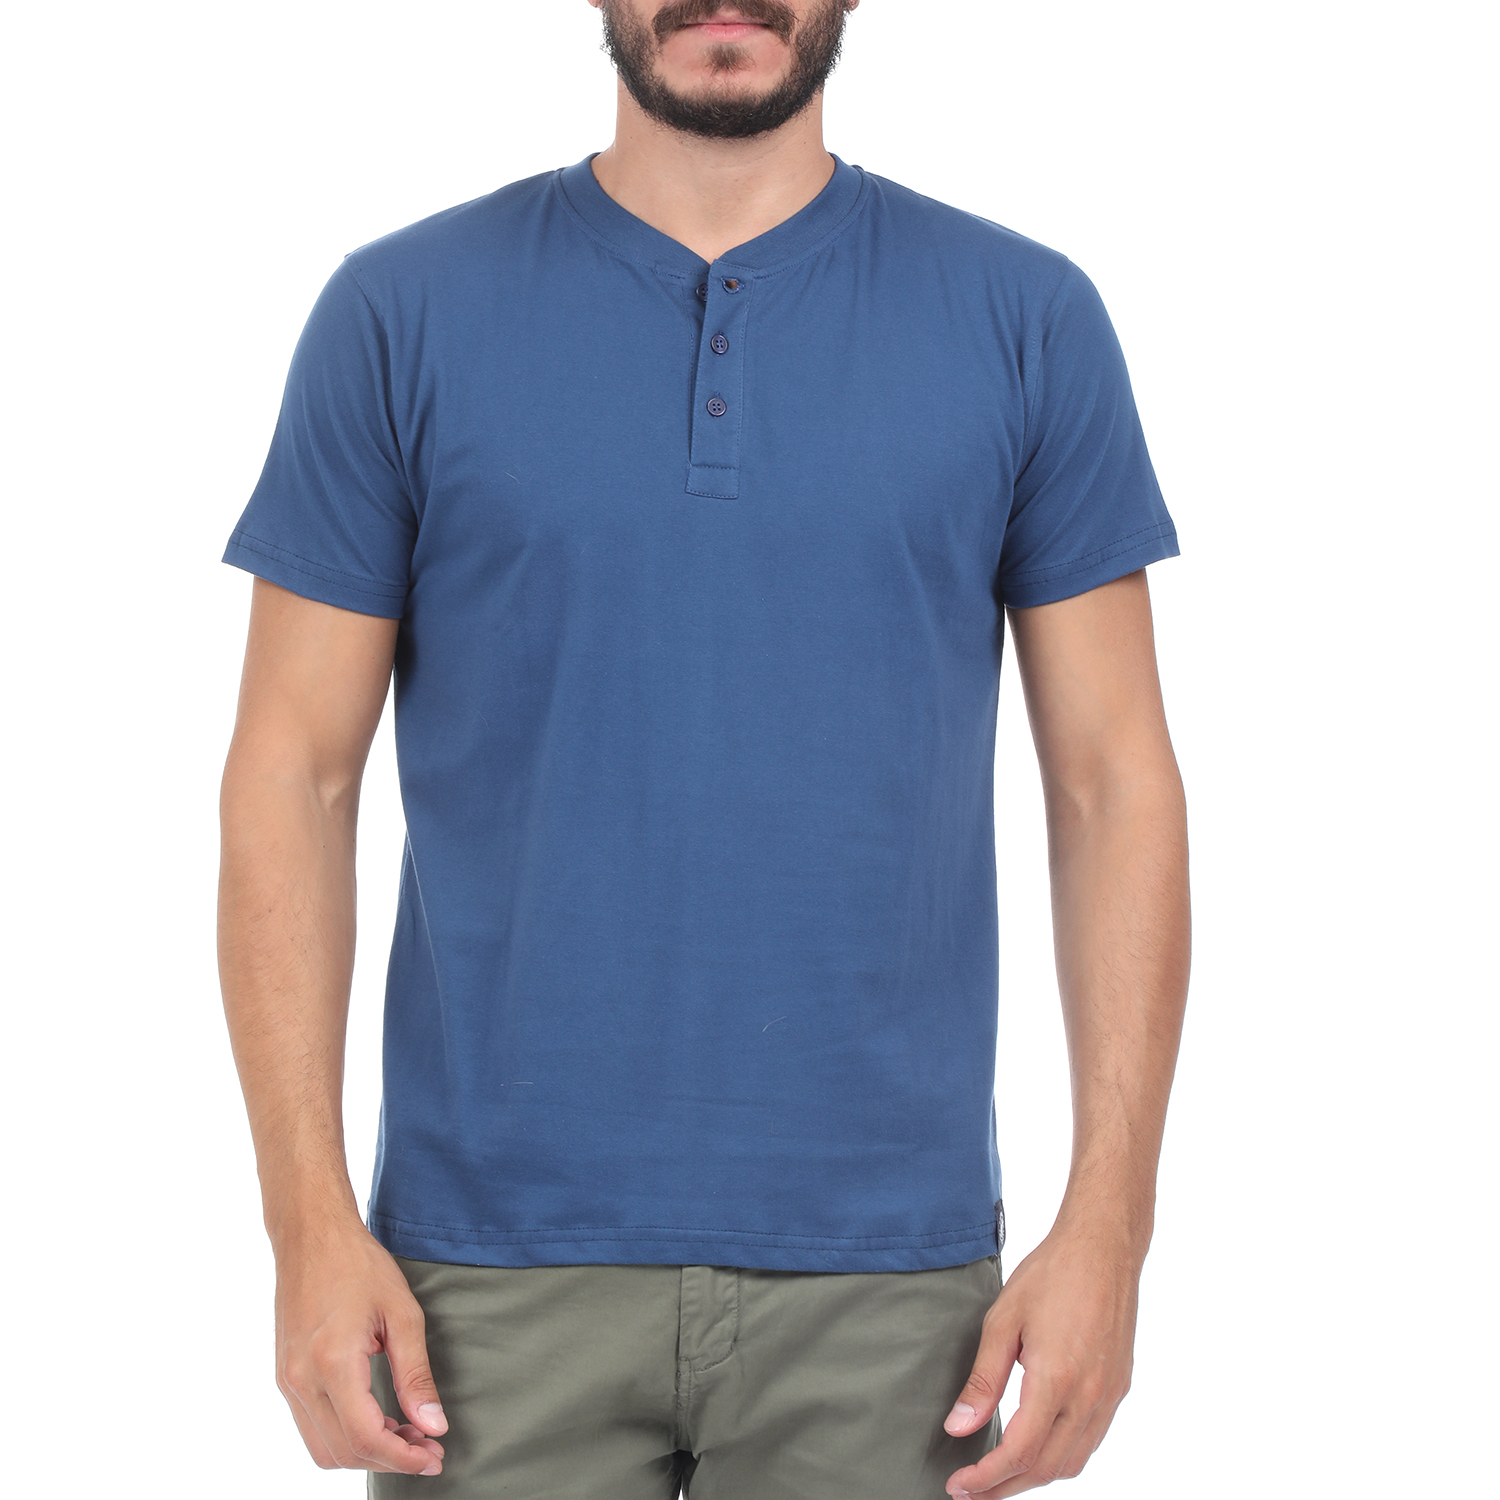 Ανδρικά/Ρούχα/Μπλούζες/Κοντομάνικες DORS - Ανδρική μπλούζα DORS μπλε